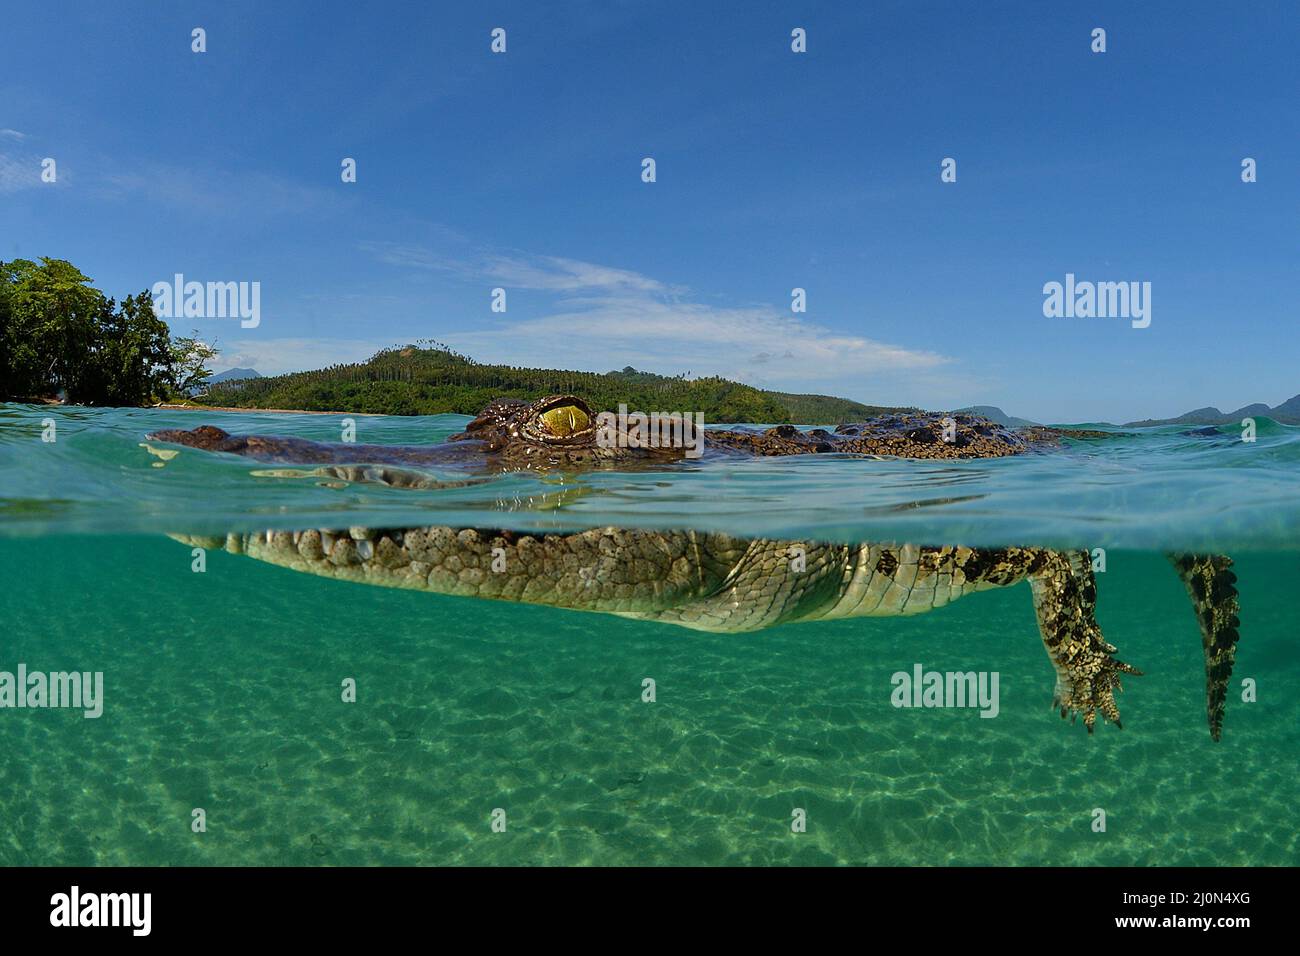 Coccodrillo di acqua salata (Crocodylus porosus), il più grande di tutti i viventi rettili, split image, Kimbe Bay, West New Britain, Papua Nuova Guinea Foto Stock